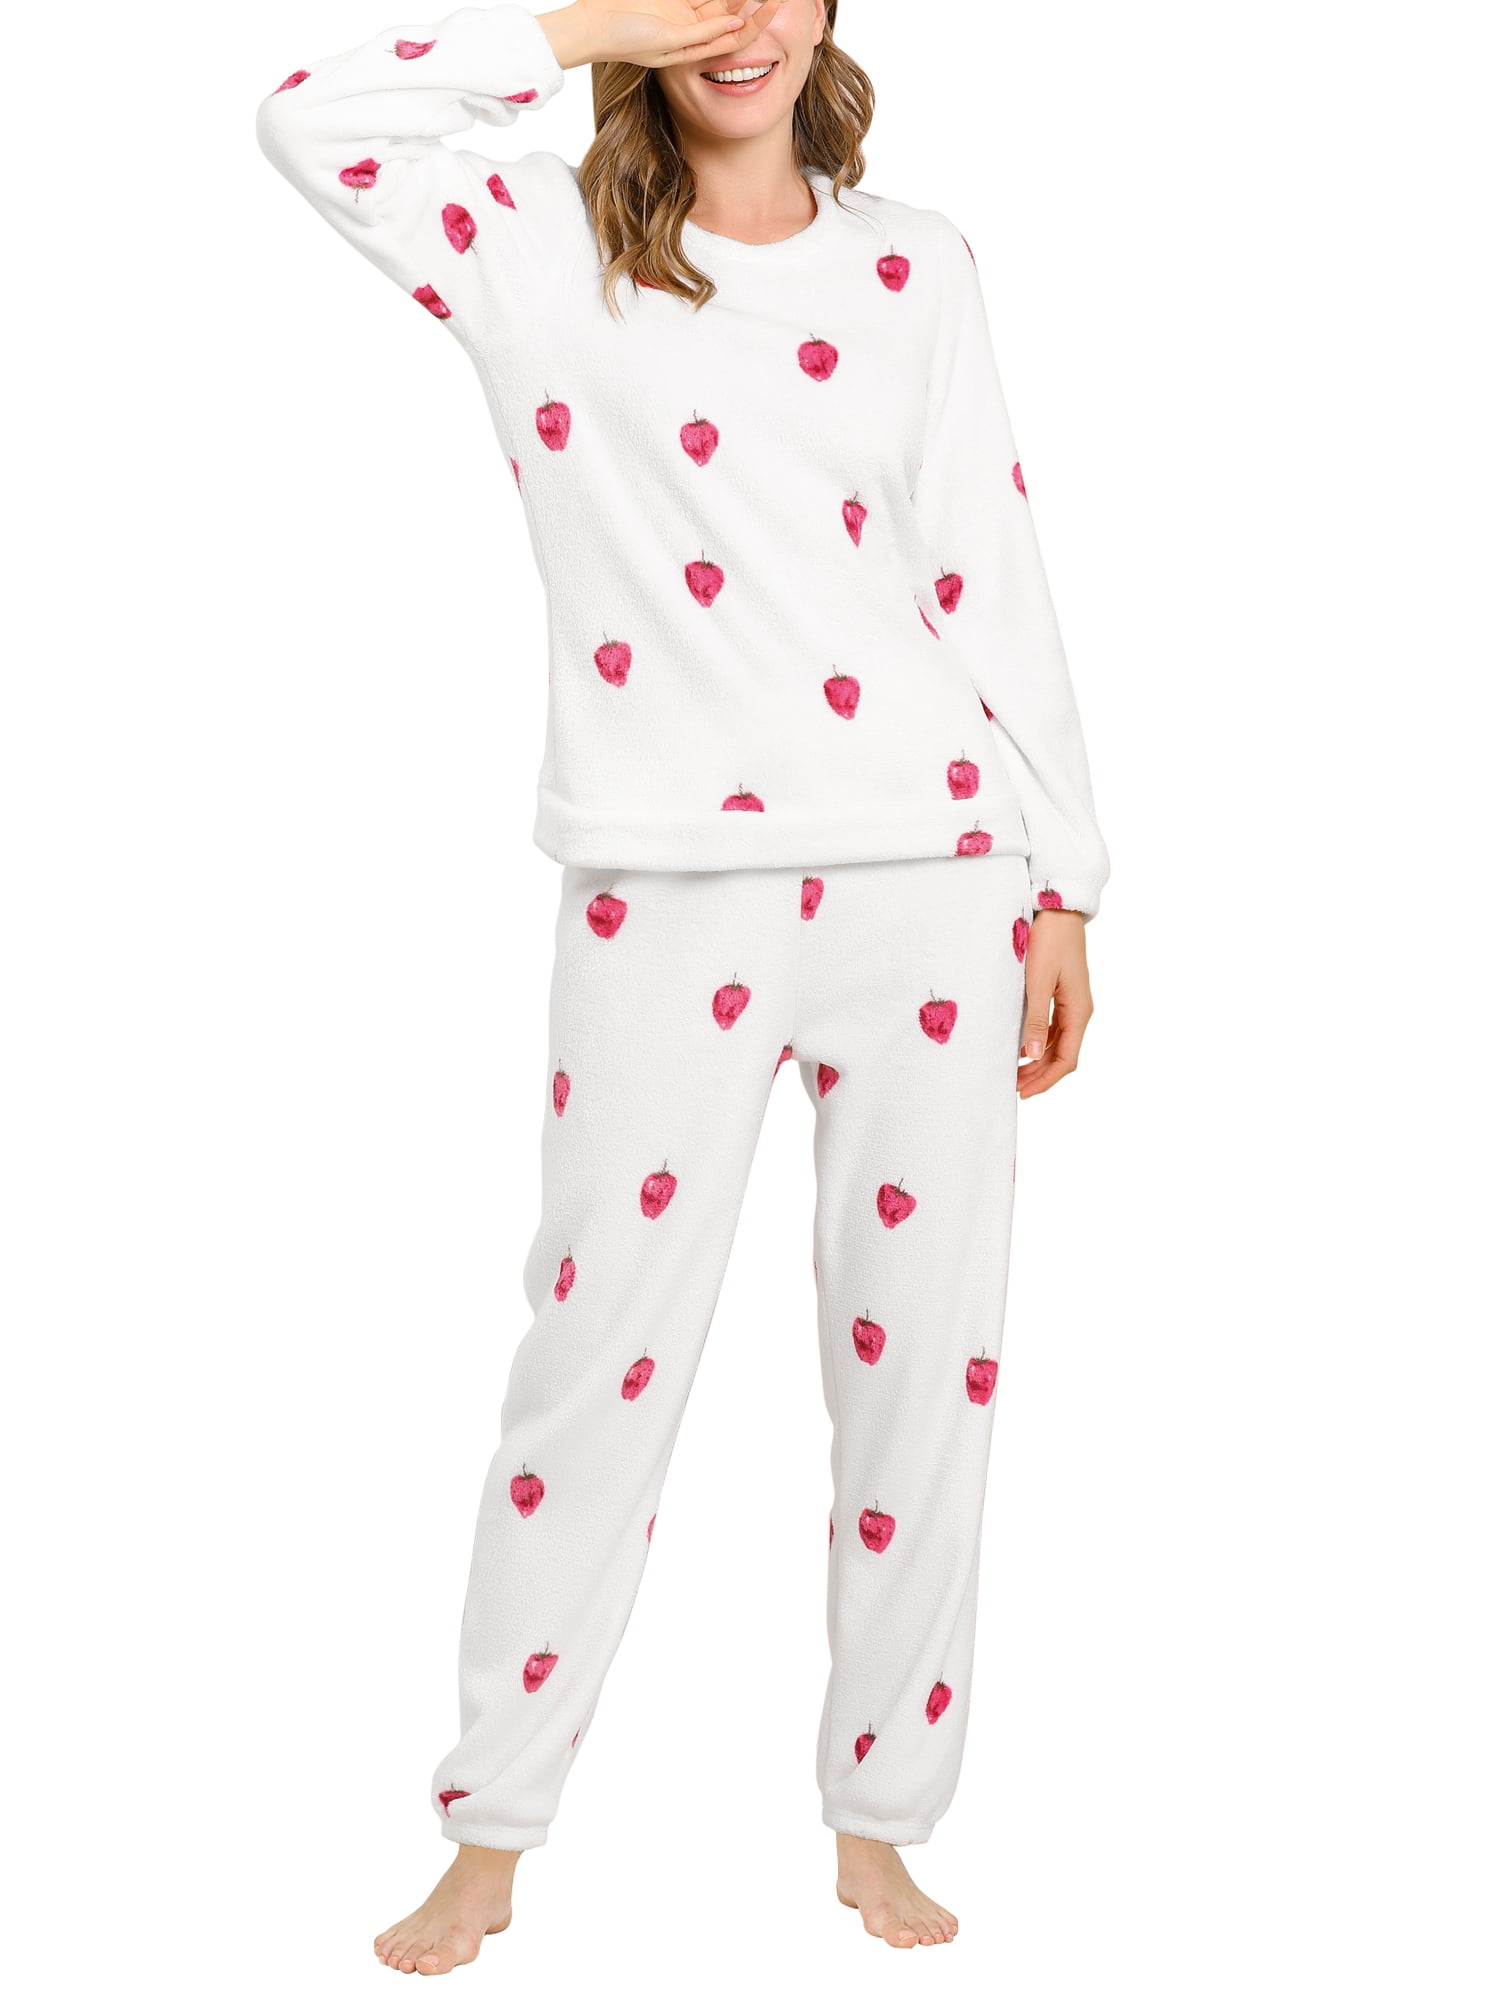 Unique Bargains Women's Winter Loungewear Sleepwear Flannel Pajama Set 